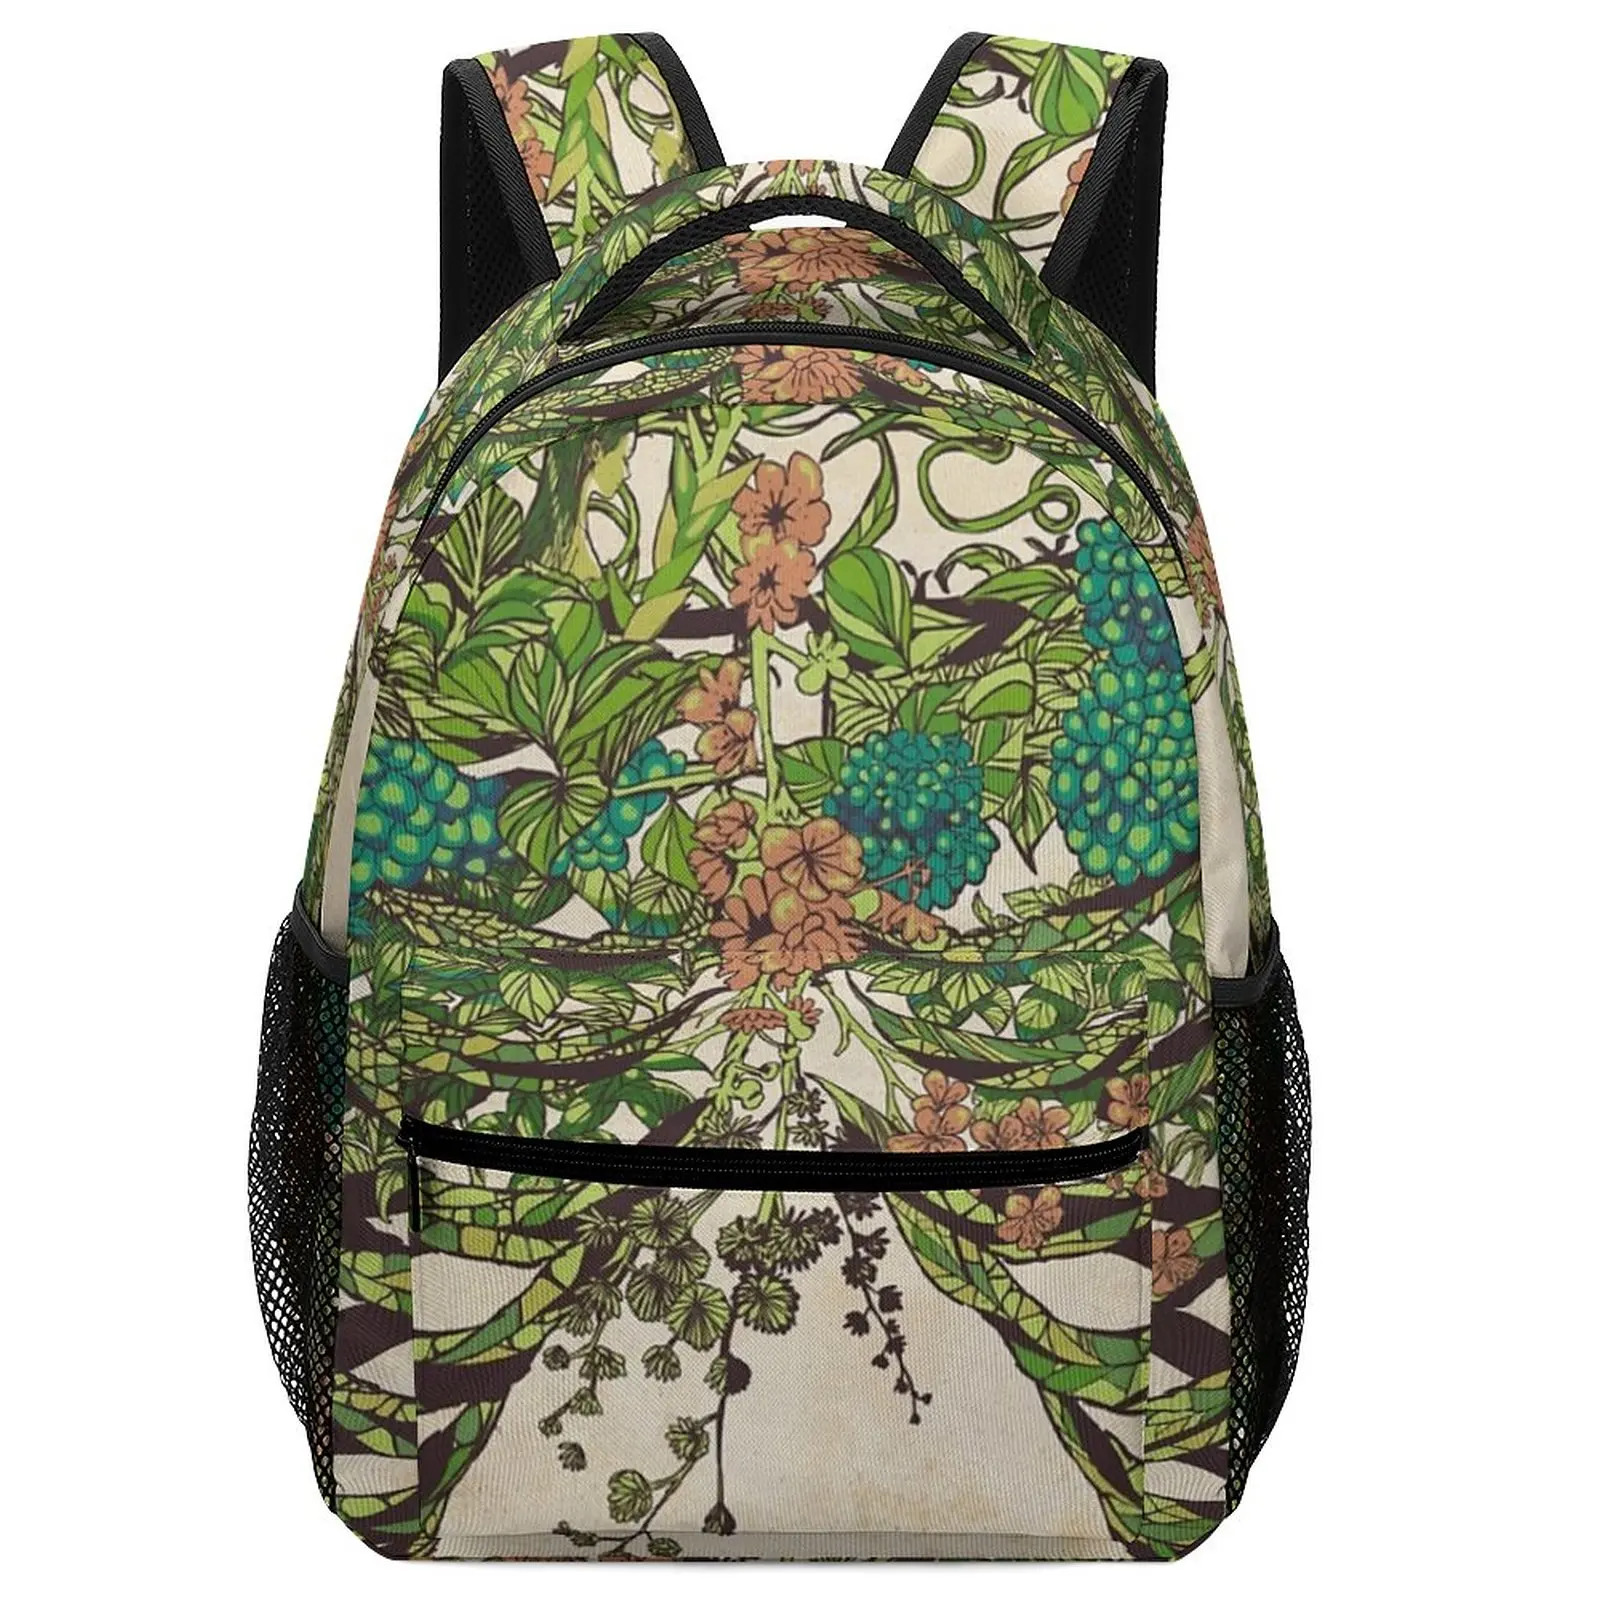 New Daydreamer Art Children's Bag Girl for Student Kids School Bags for Women Women Bags Free Shipping